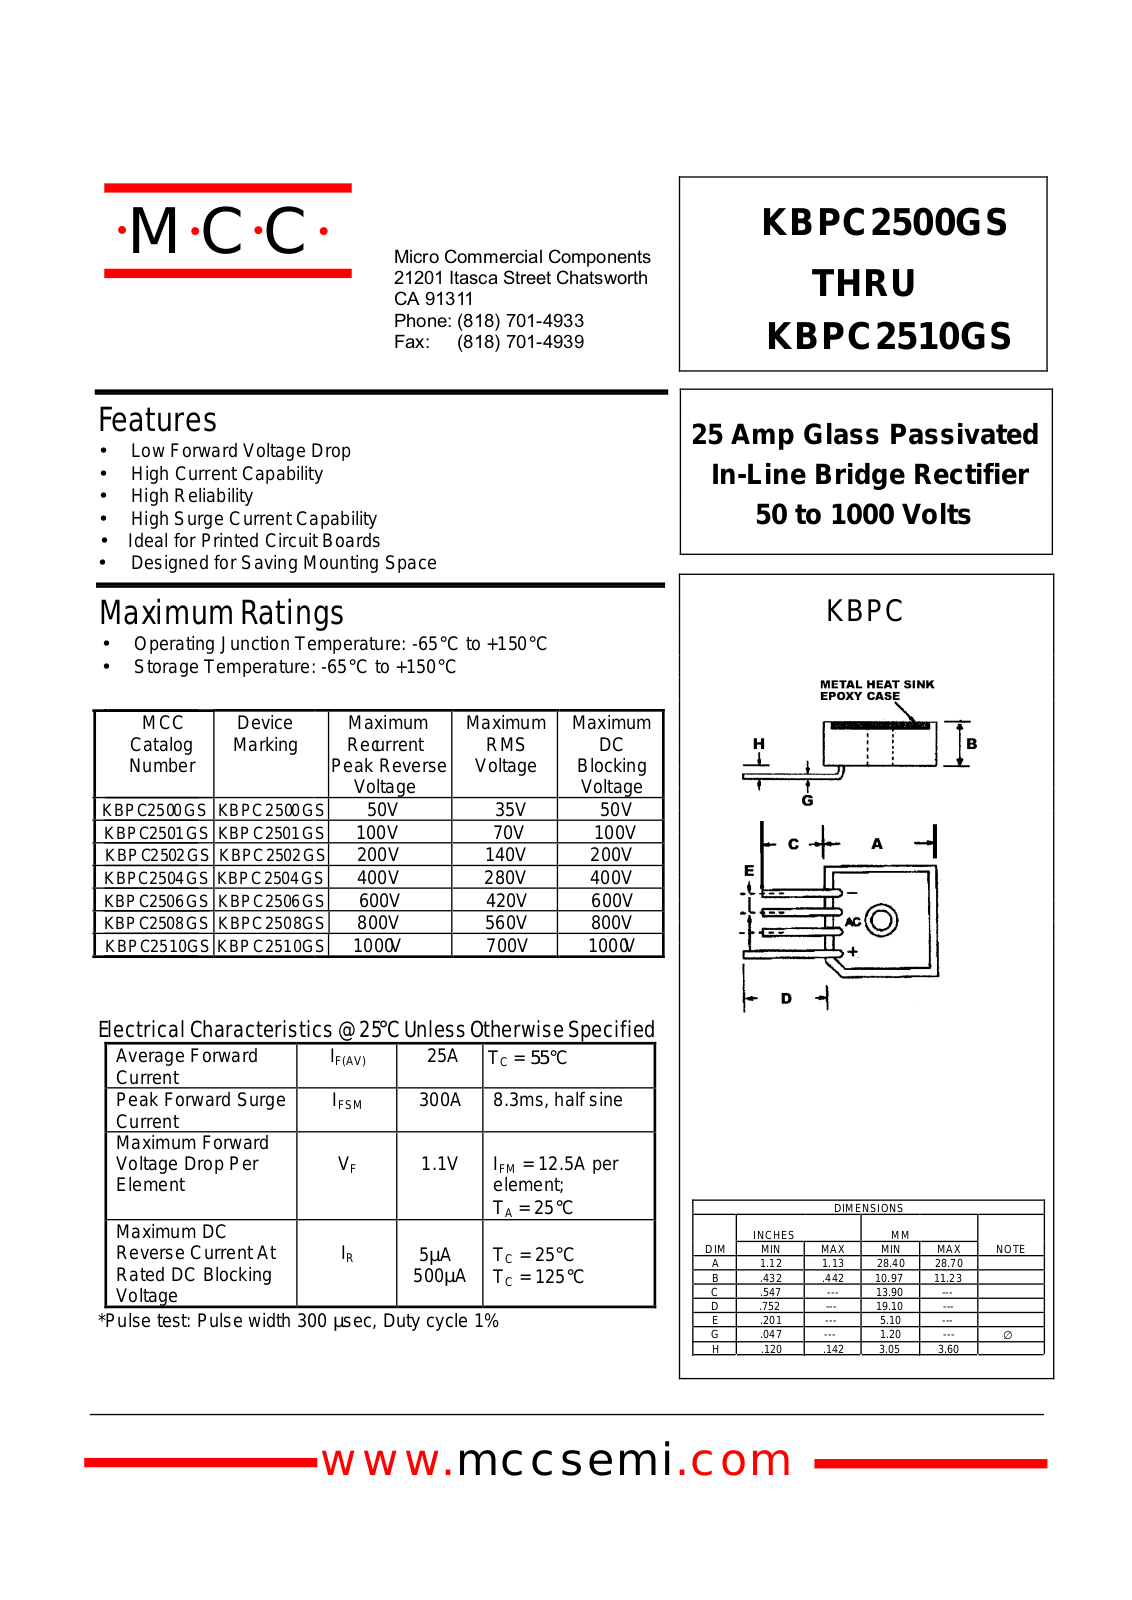 MCC KBPC250AGS, KBPC2506GS, KBPC2504GS, KBPC2508GS, KBPC2500GS Datasheet